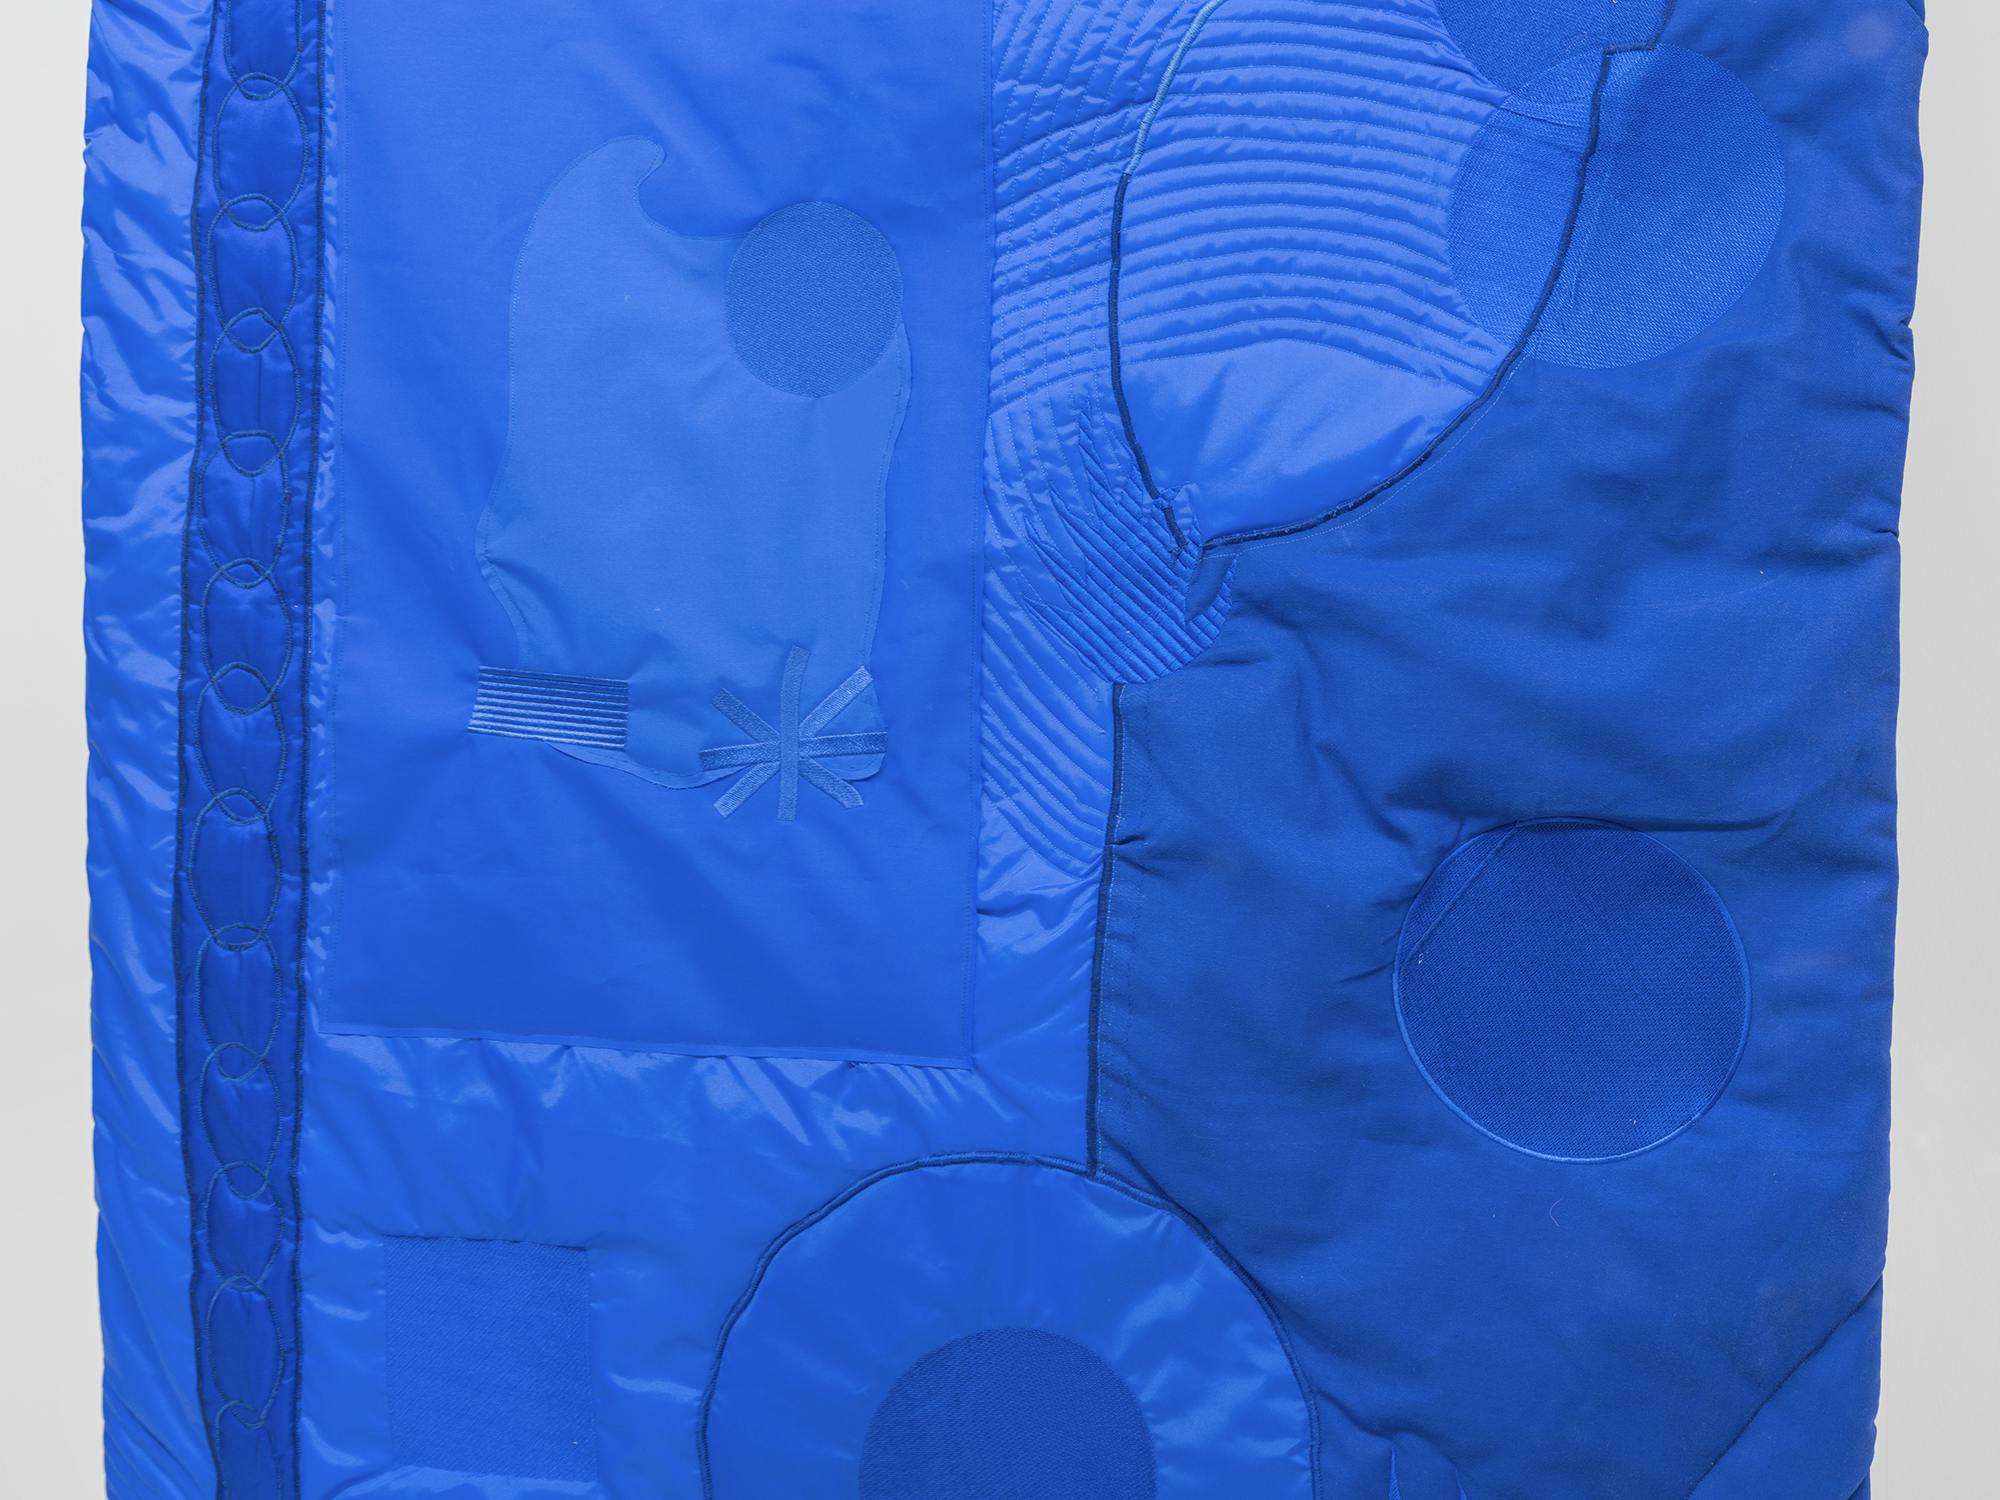 Gabbiano (blue), detail